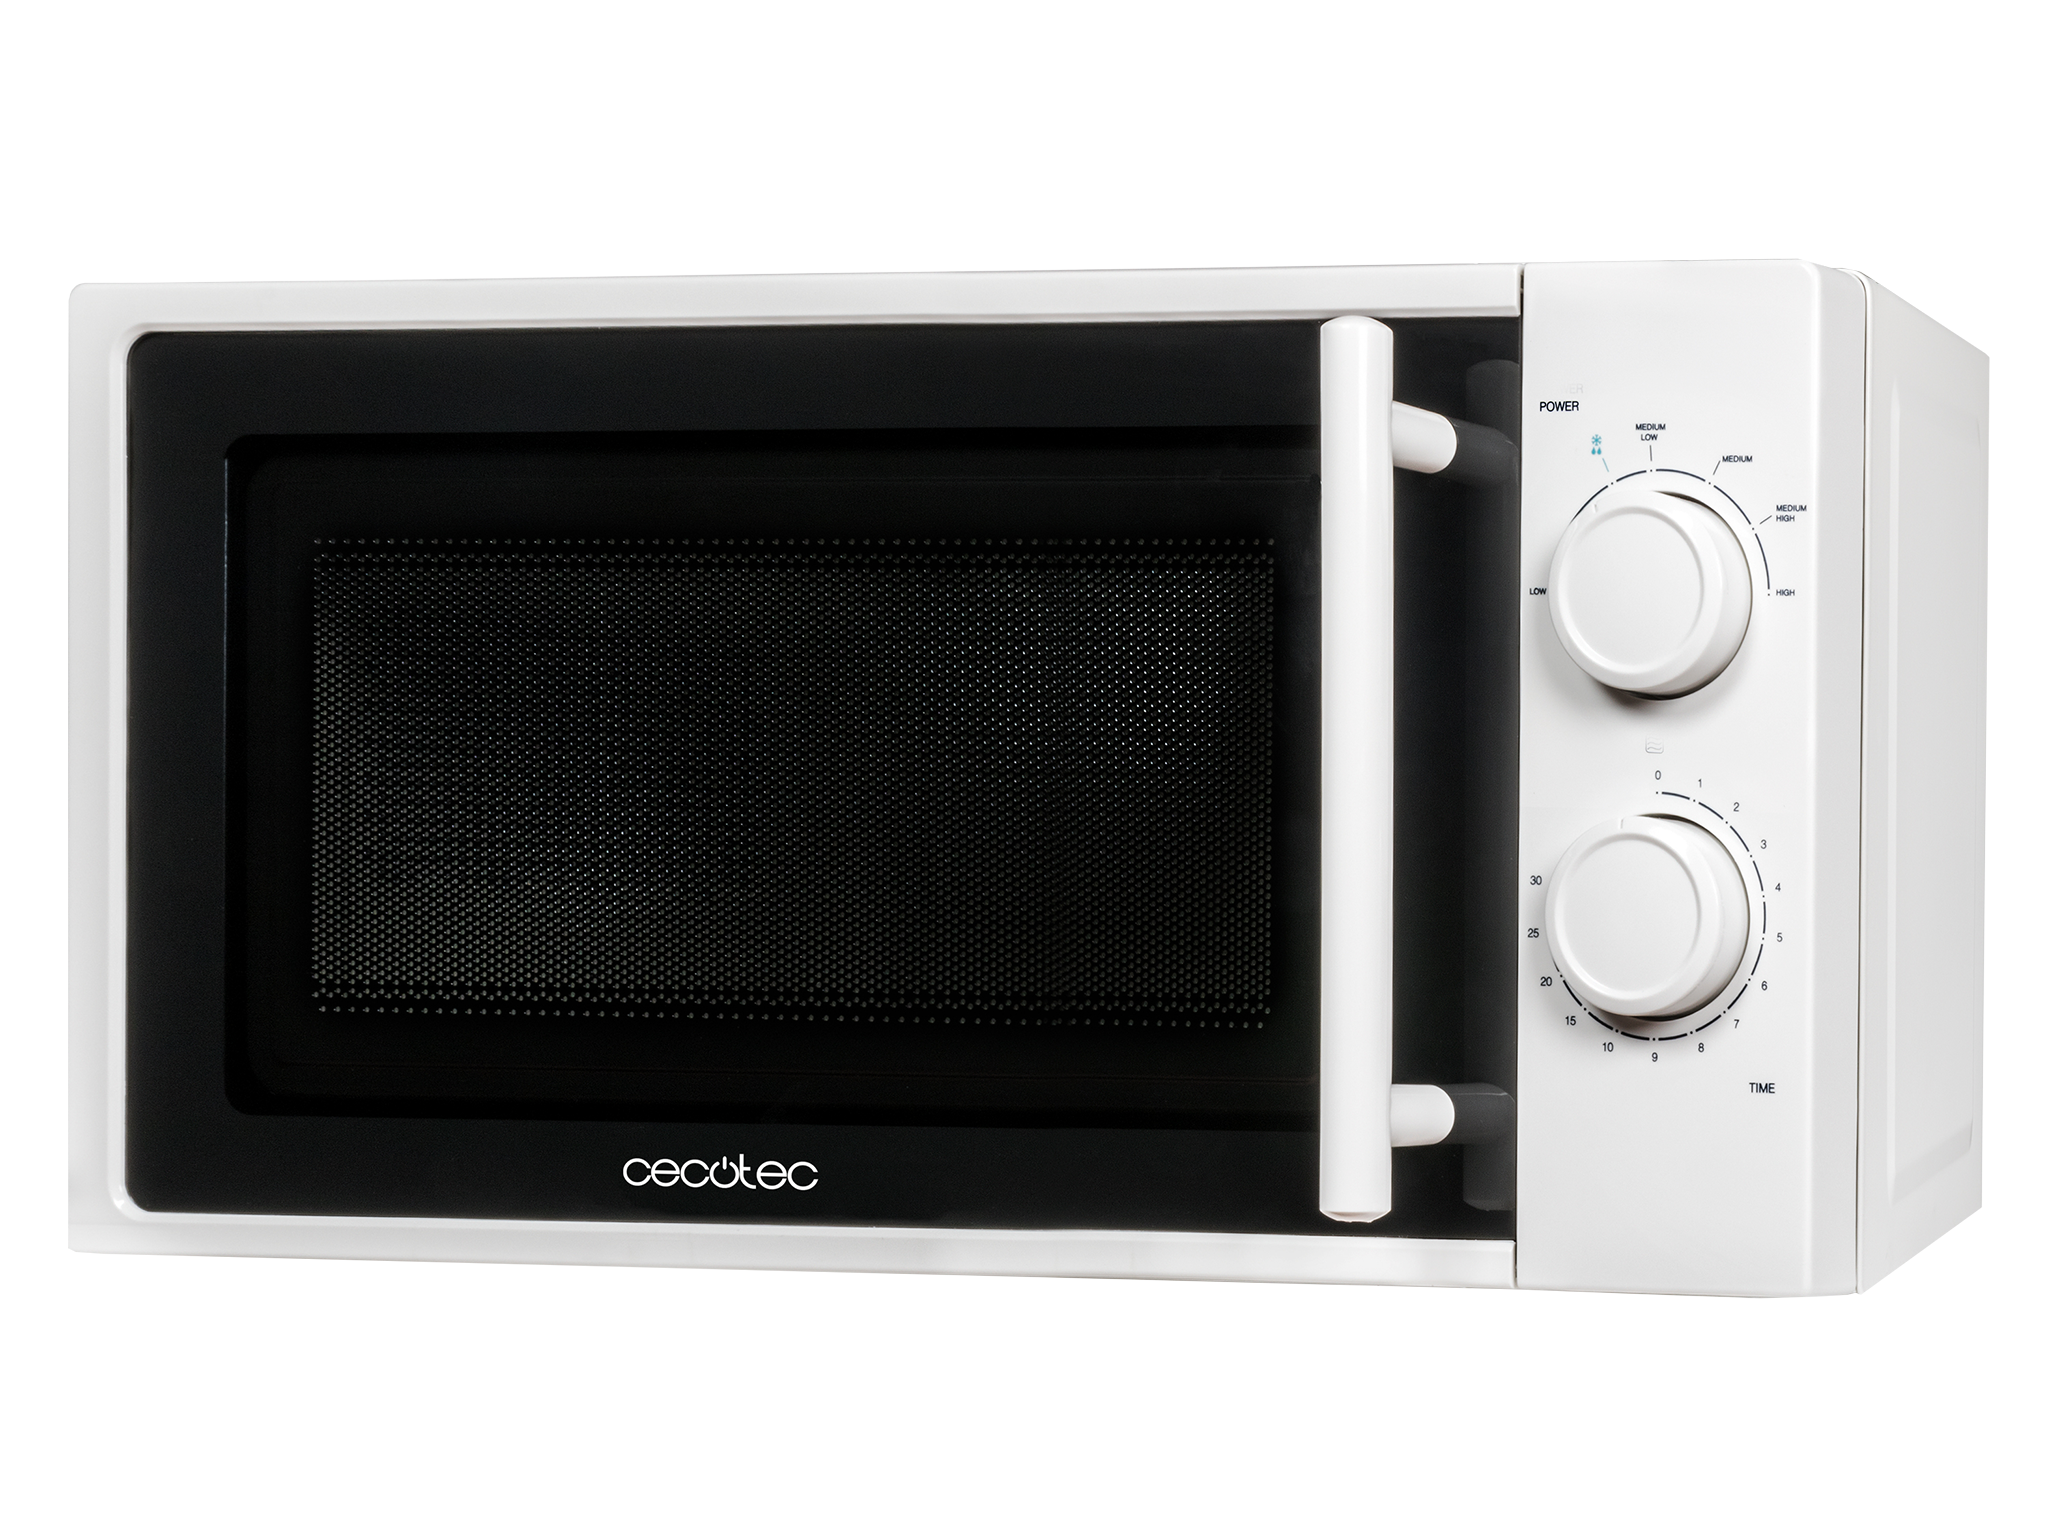 Micro-ondes simple White, capacité de 20 L, 700 W, minuterie jusqu'à 30 min, 6 niveaux de puissance